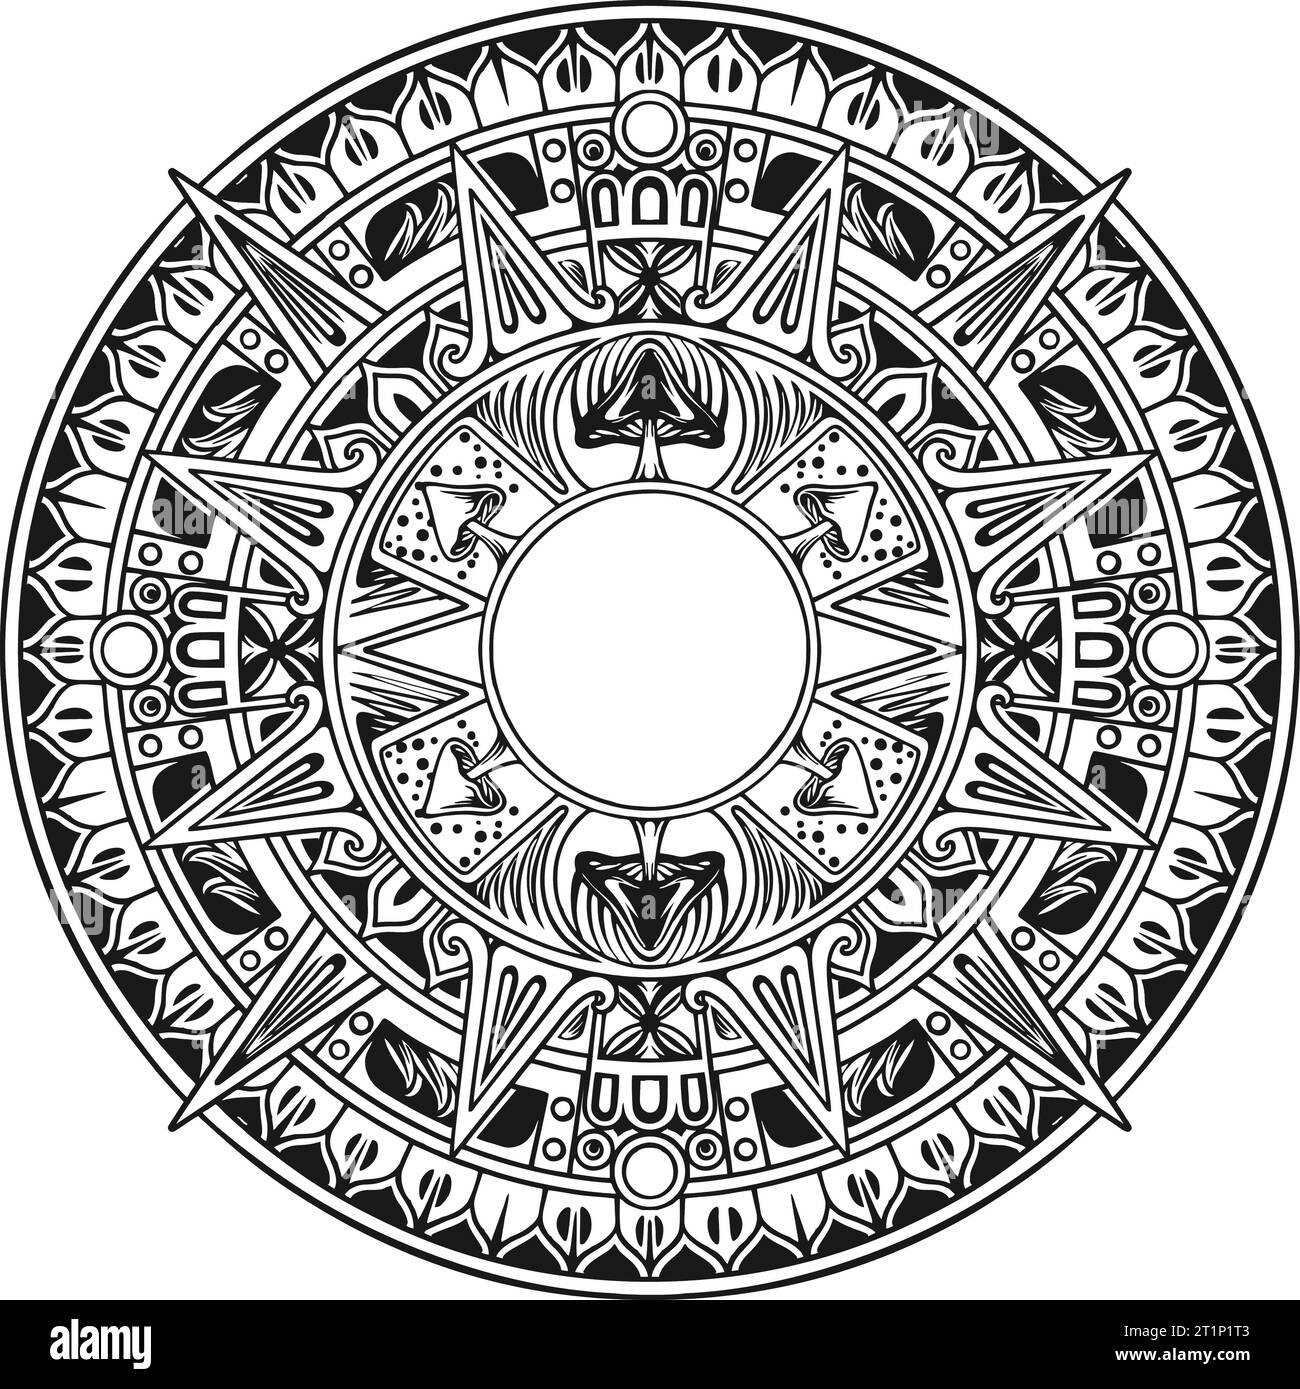 Opulente Pilze Mandala Ornament Umriss Vektor Illustrationen für Ihre Arbeit Logo, Merchandise T-Shirt, Aufkleber und Label Designs, Poster, Gruß Stock Vektor